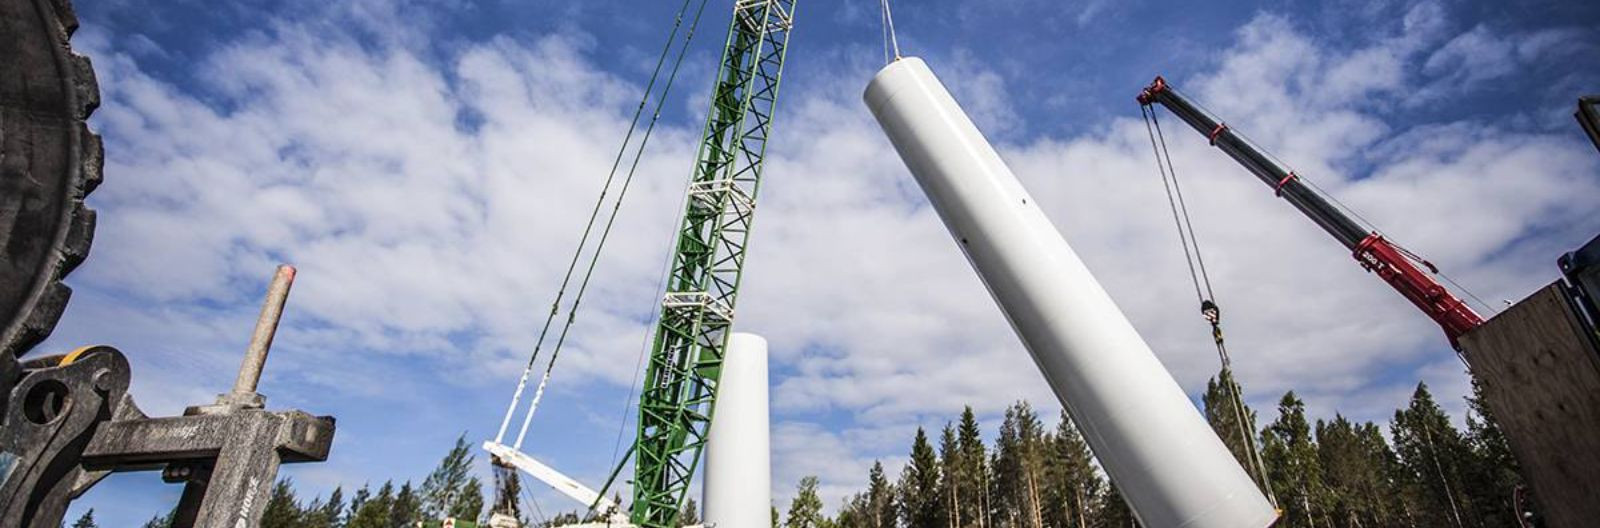 TUULEPARKIDE PROJEKTIDTM Voima Oy tegeleb paljude Põhja-Pohjanmaa tuuleparkide arendamisega. Nende projektide jaoks oleme loonud kohalikud projektiettevõtted.Aa